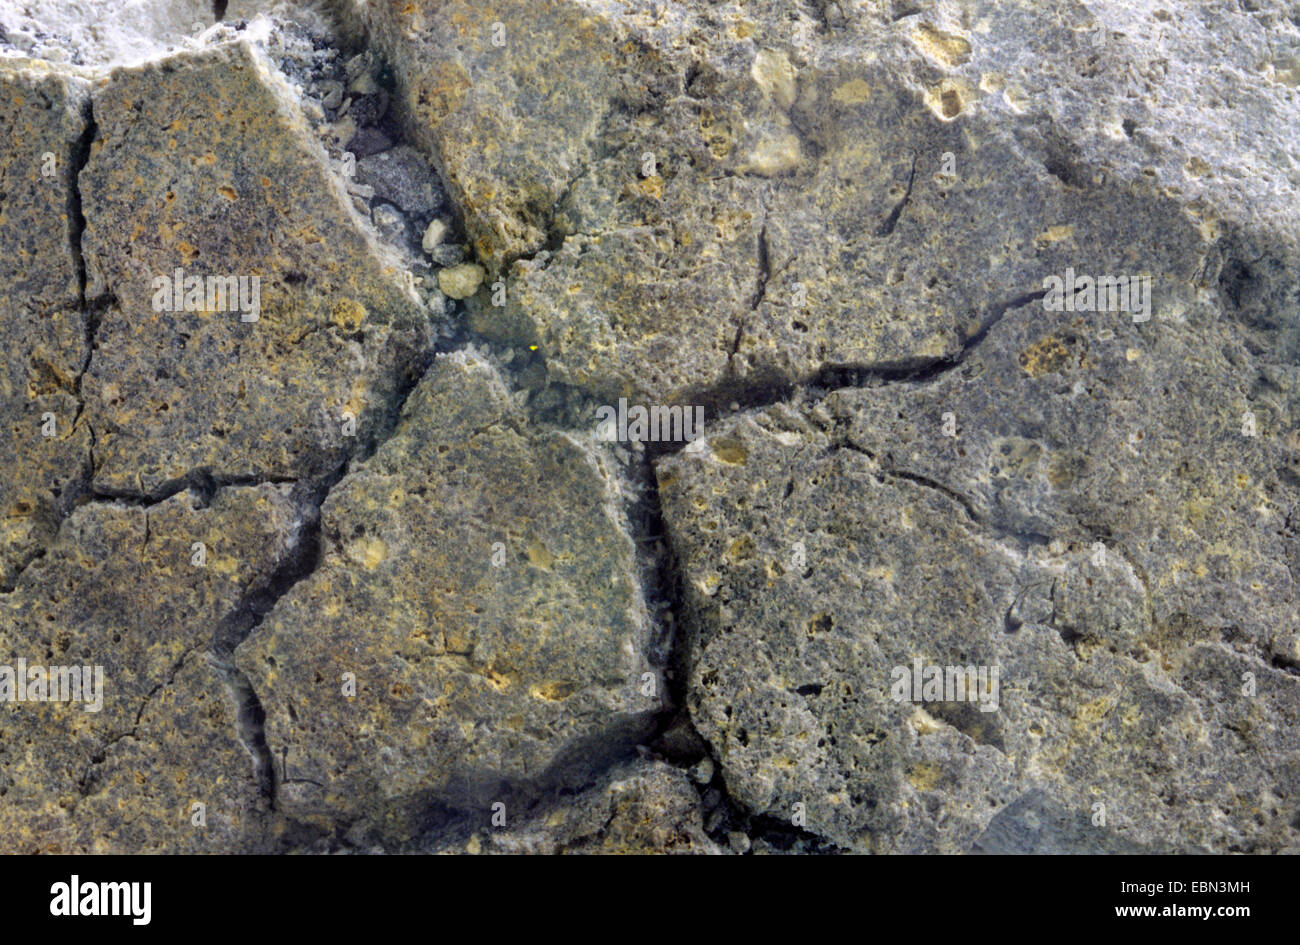 Bread-crust lava, Italy, Aolische Inseln, Vulcano Stock Photo